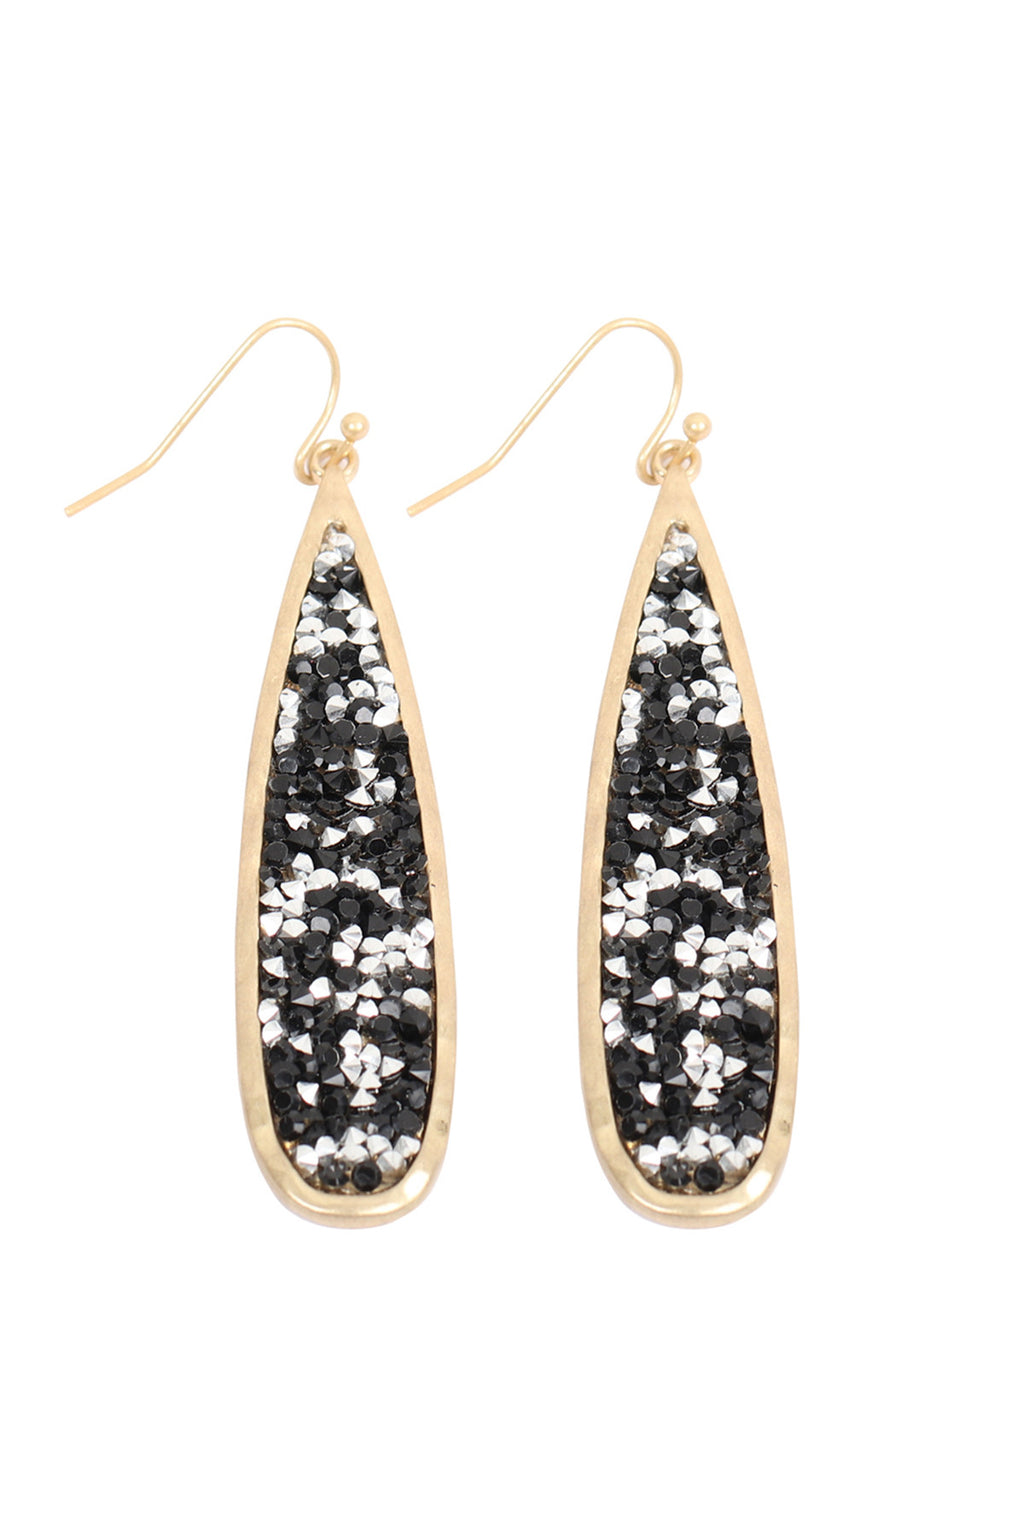 Matte Gold Black  Long Pear Glitter Faceted Dangle Hook Earrings - Pack of 6